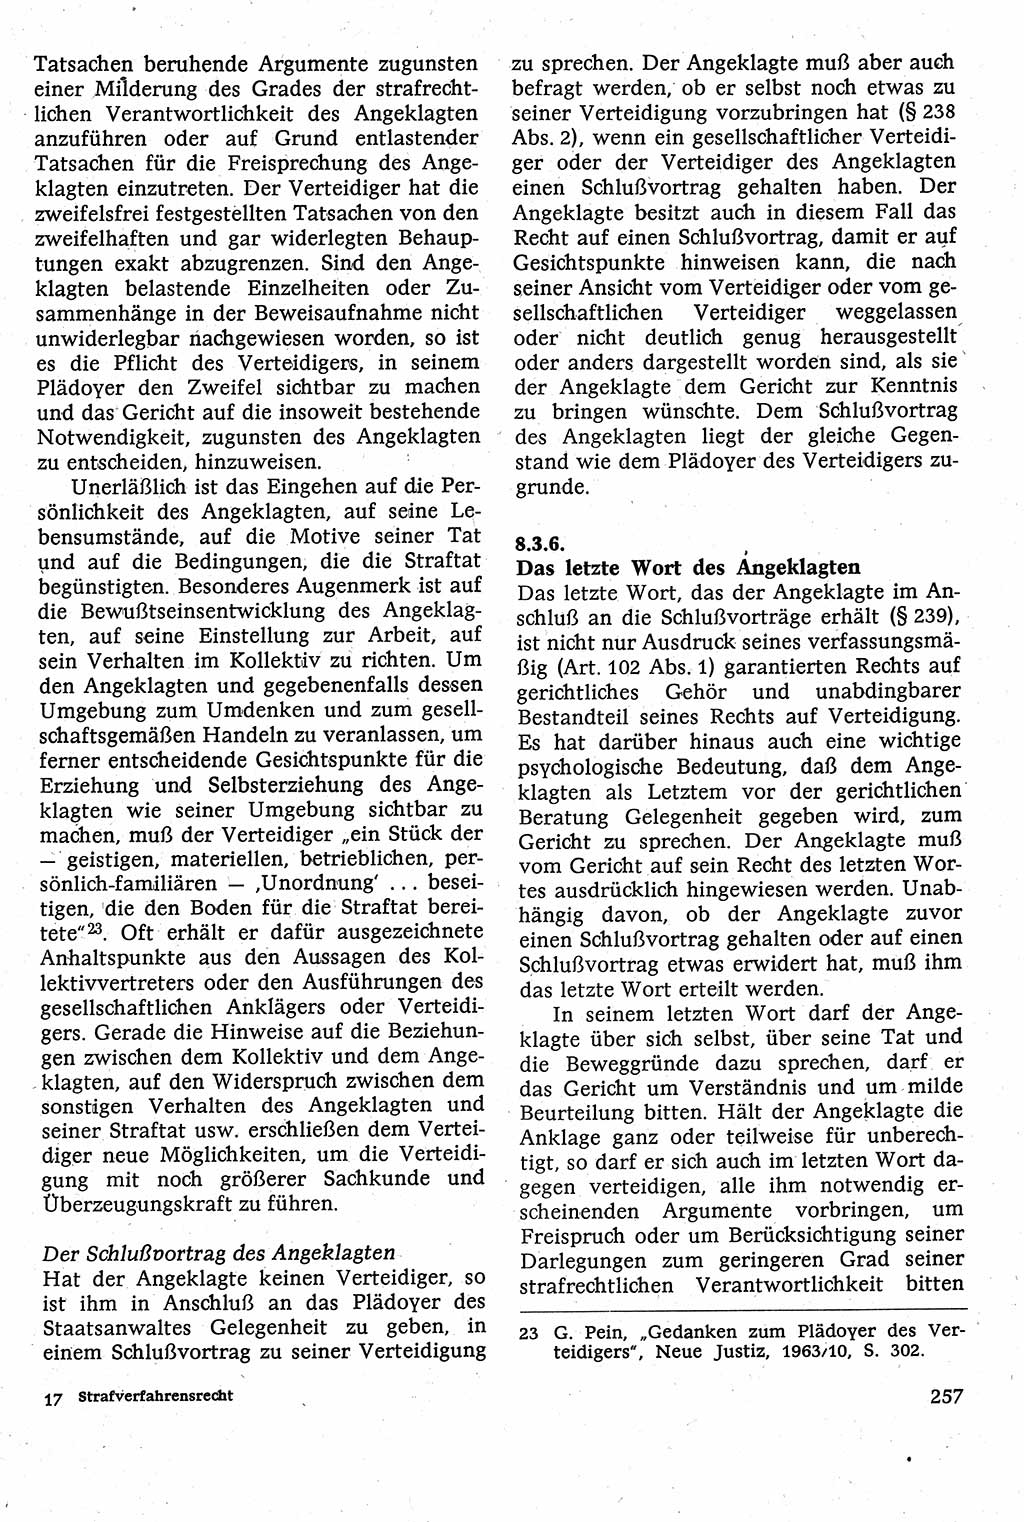 Strafverfahrensrecht [Deutsche Demokratische Republik (DDR)], Lehrbuch 1982, Seite 257 (Strafverf.-R. DDR Lb. 1982, S. 257)